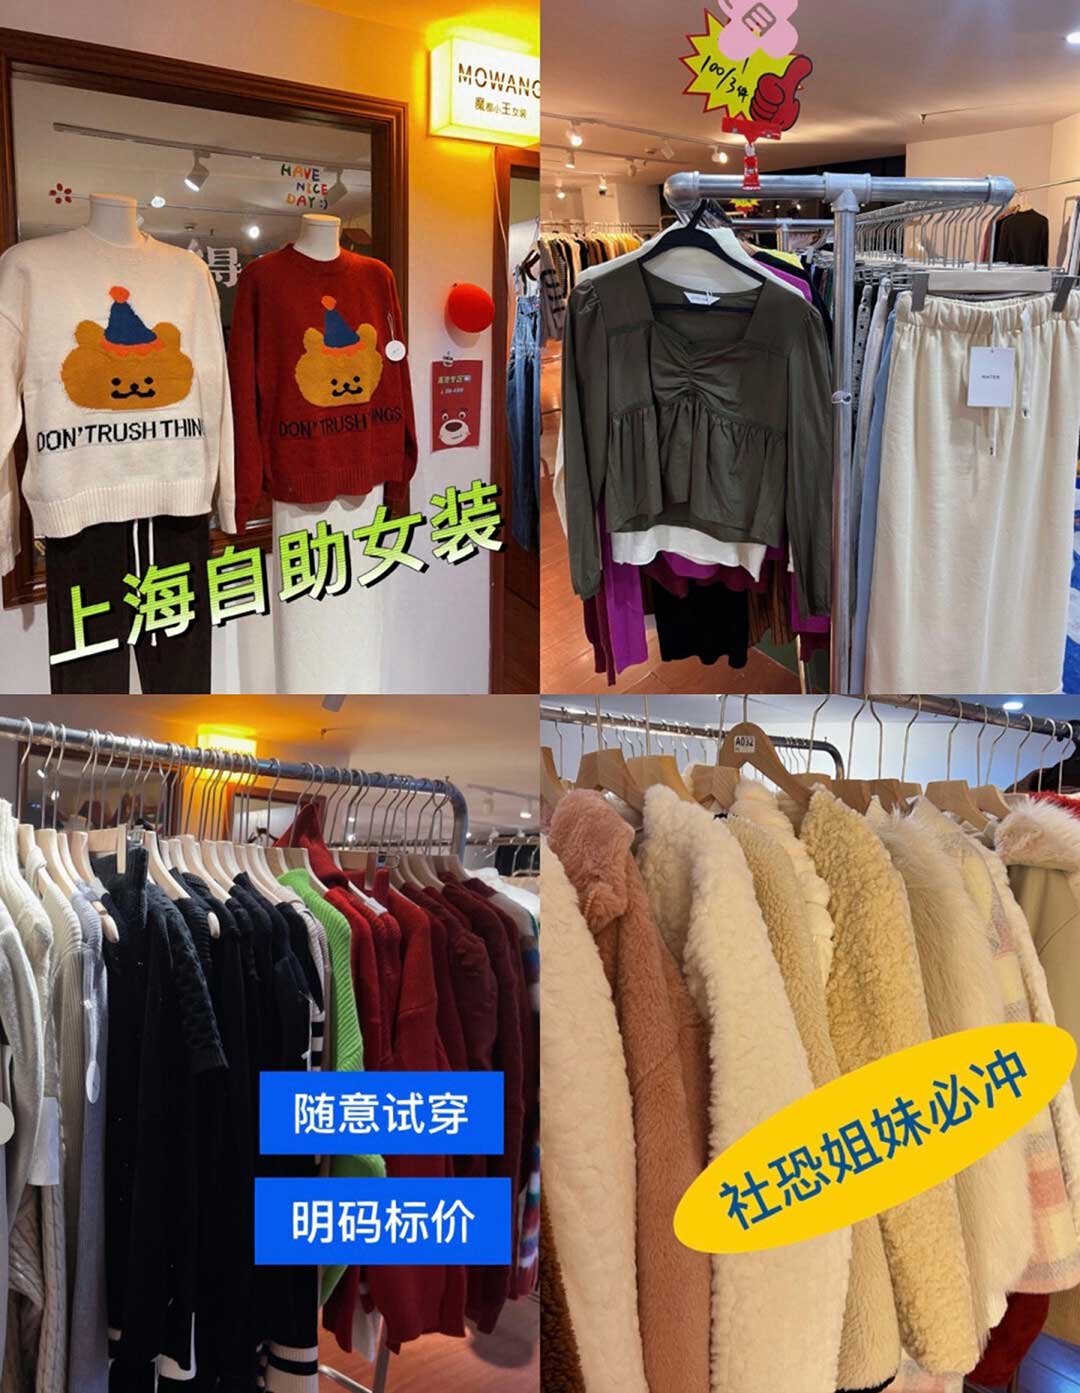 上海自助女装店出圈！无人跟随自主选购买单备受欢迎.jpg